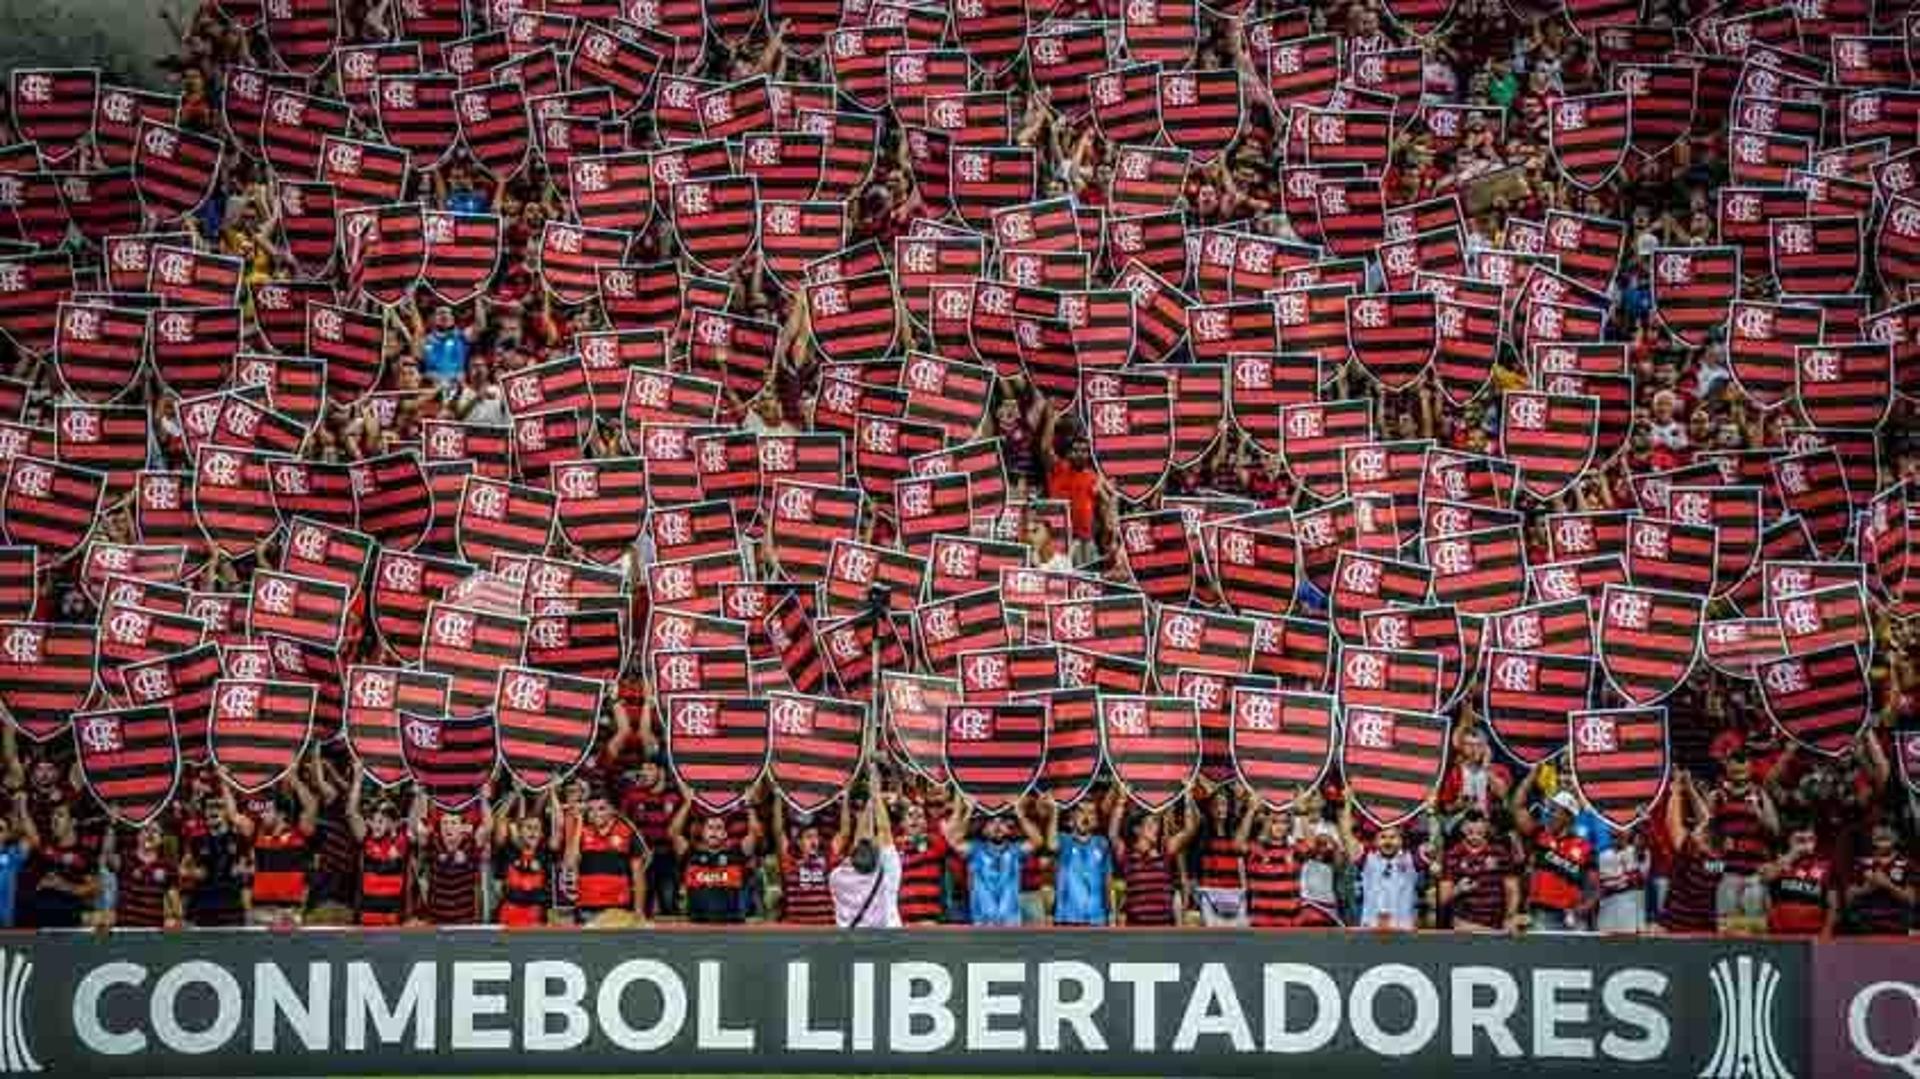 Flamengo 0x1 Peñarol - Libertadores, 3/4/2019